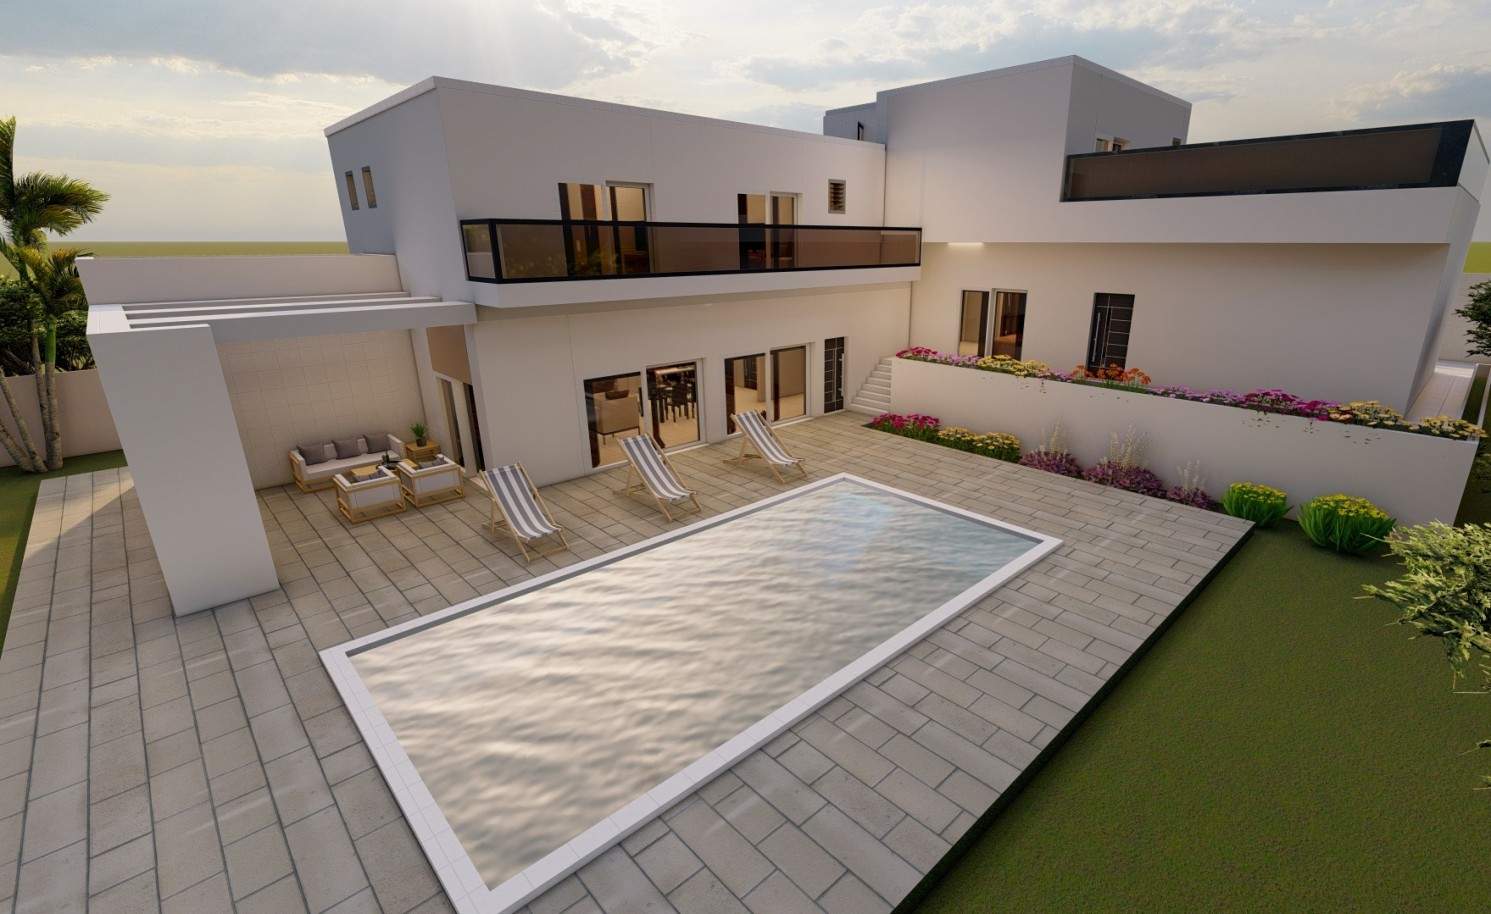 Villa de 4 dormitorios en construcción, en venta en Porto de Mós, Algarve_211037